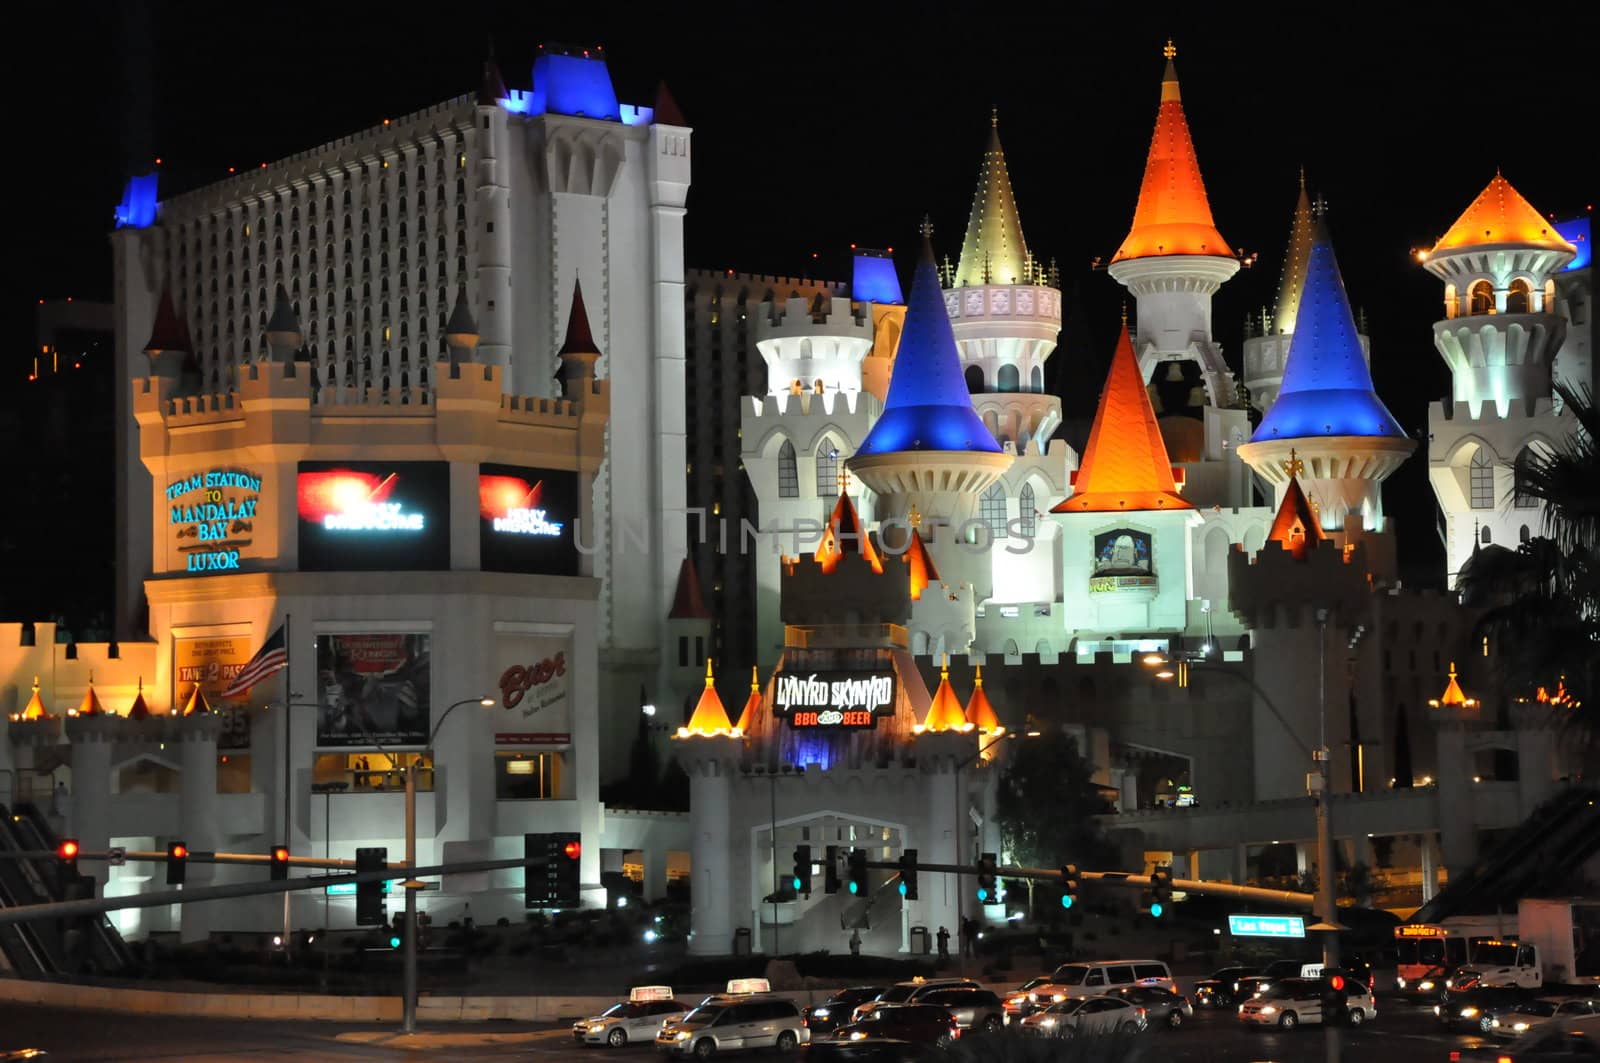 Excalibur Hotel and Casino in Las Vegas by sainaniritu